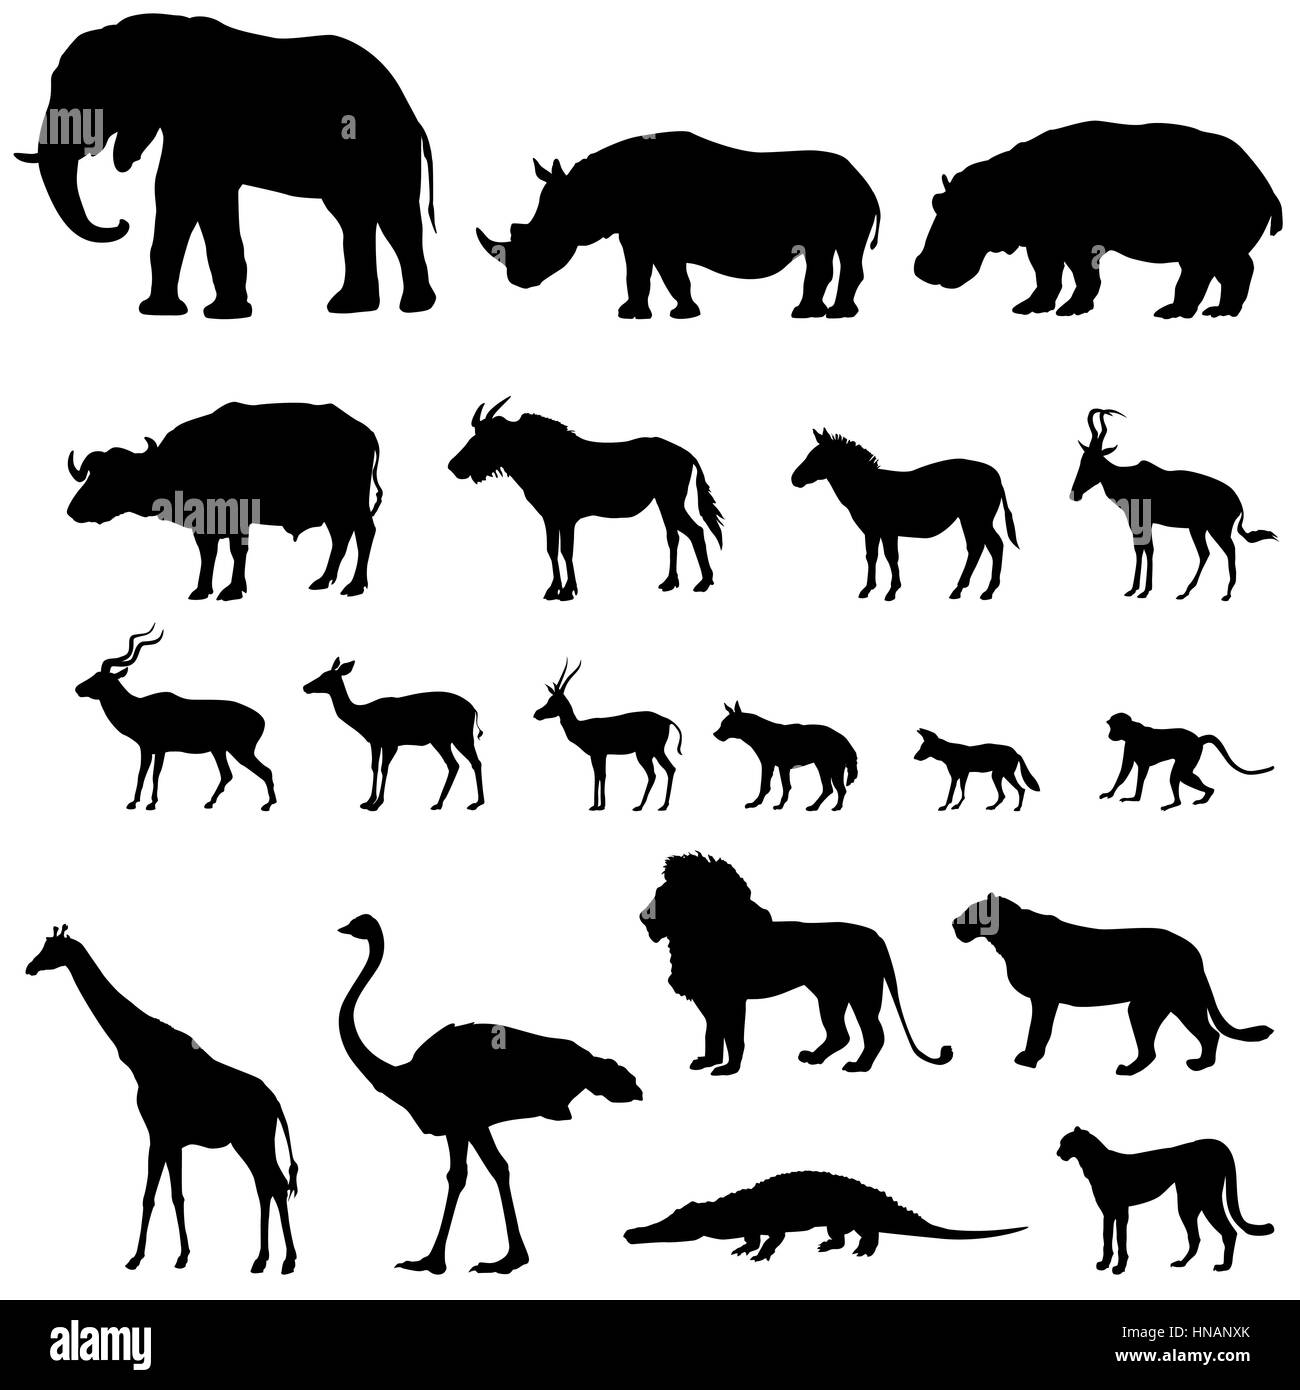 Afrikanische Tiere Silhouetten. Vektor Tiere der tropischen Zone icons Collection. Stock Vektor